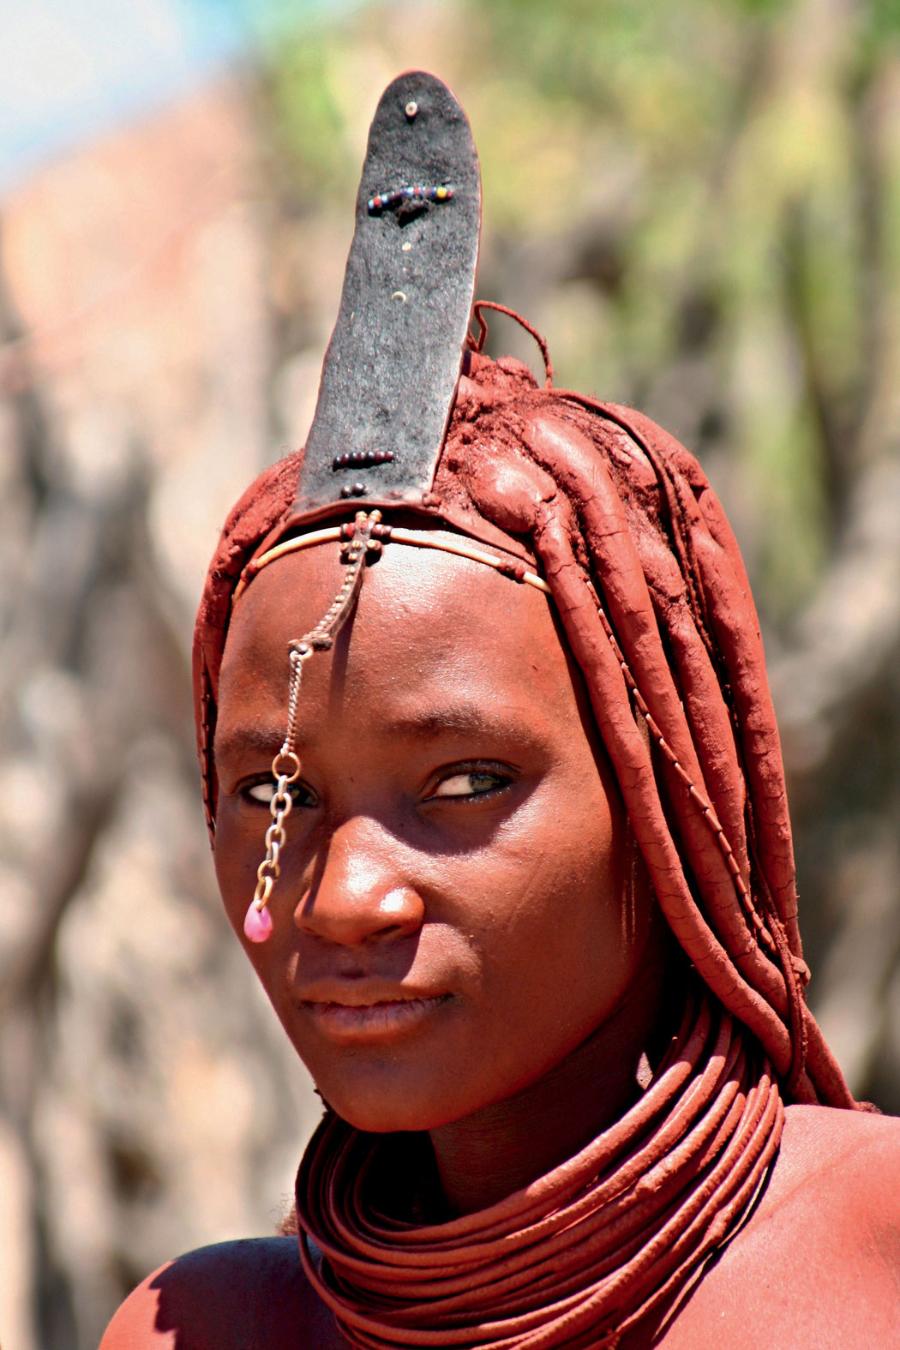 Kobiety z plemienia Himba (Namibia) używają ochry do zdobienia ciała.